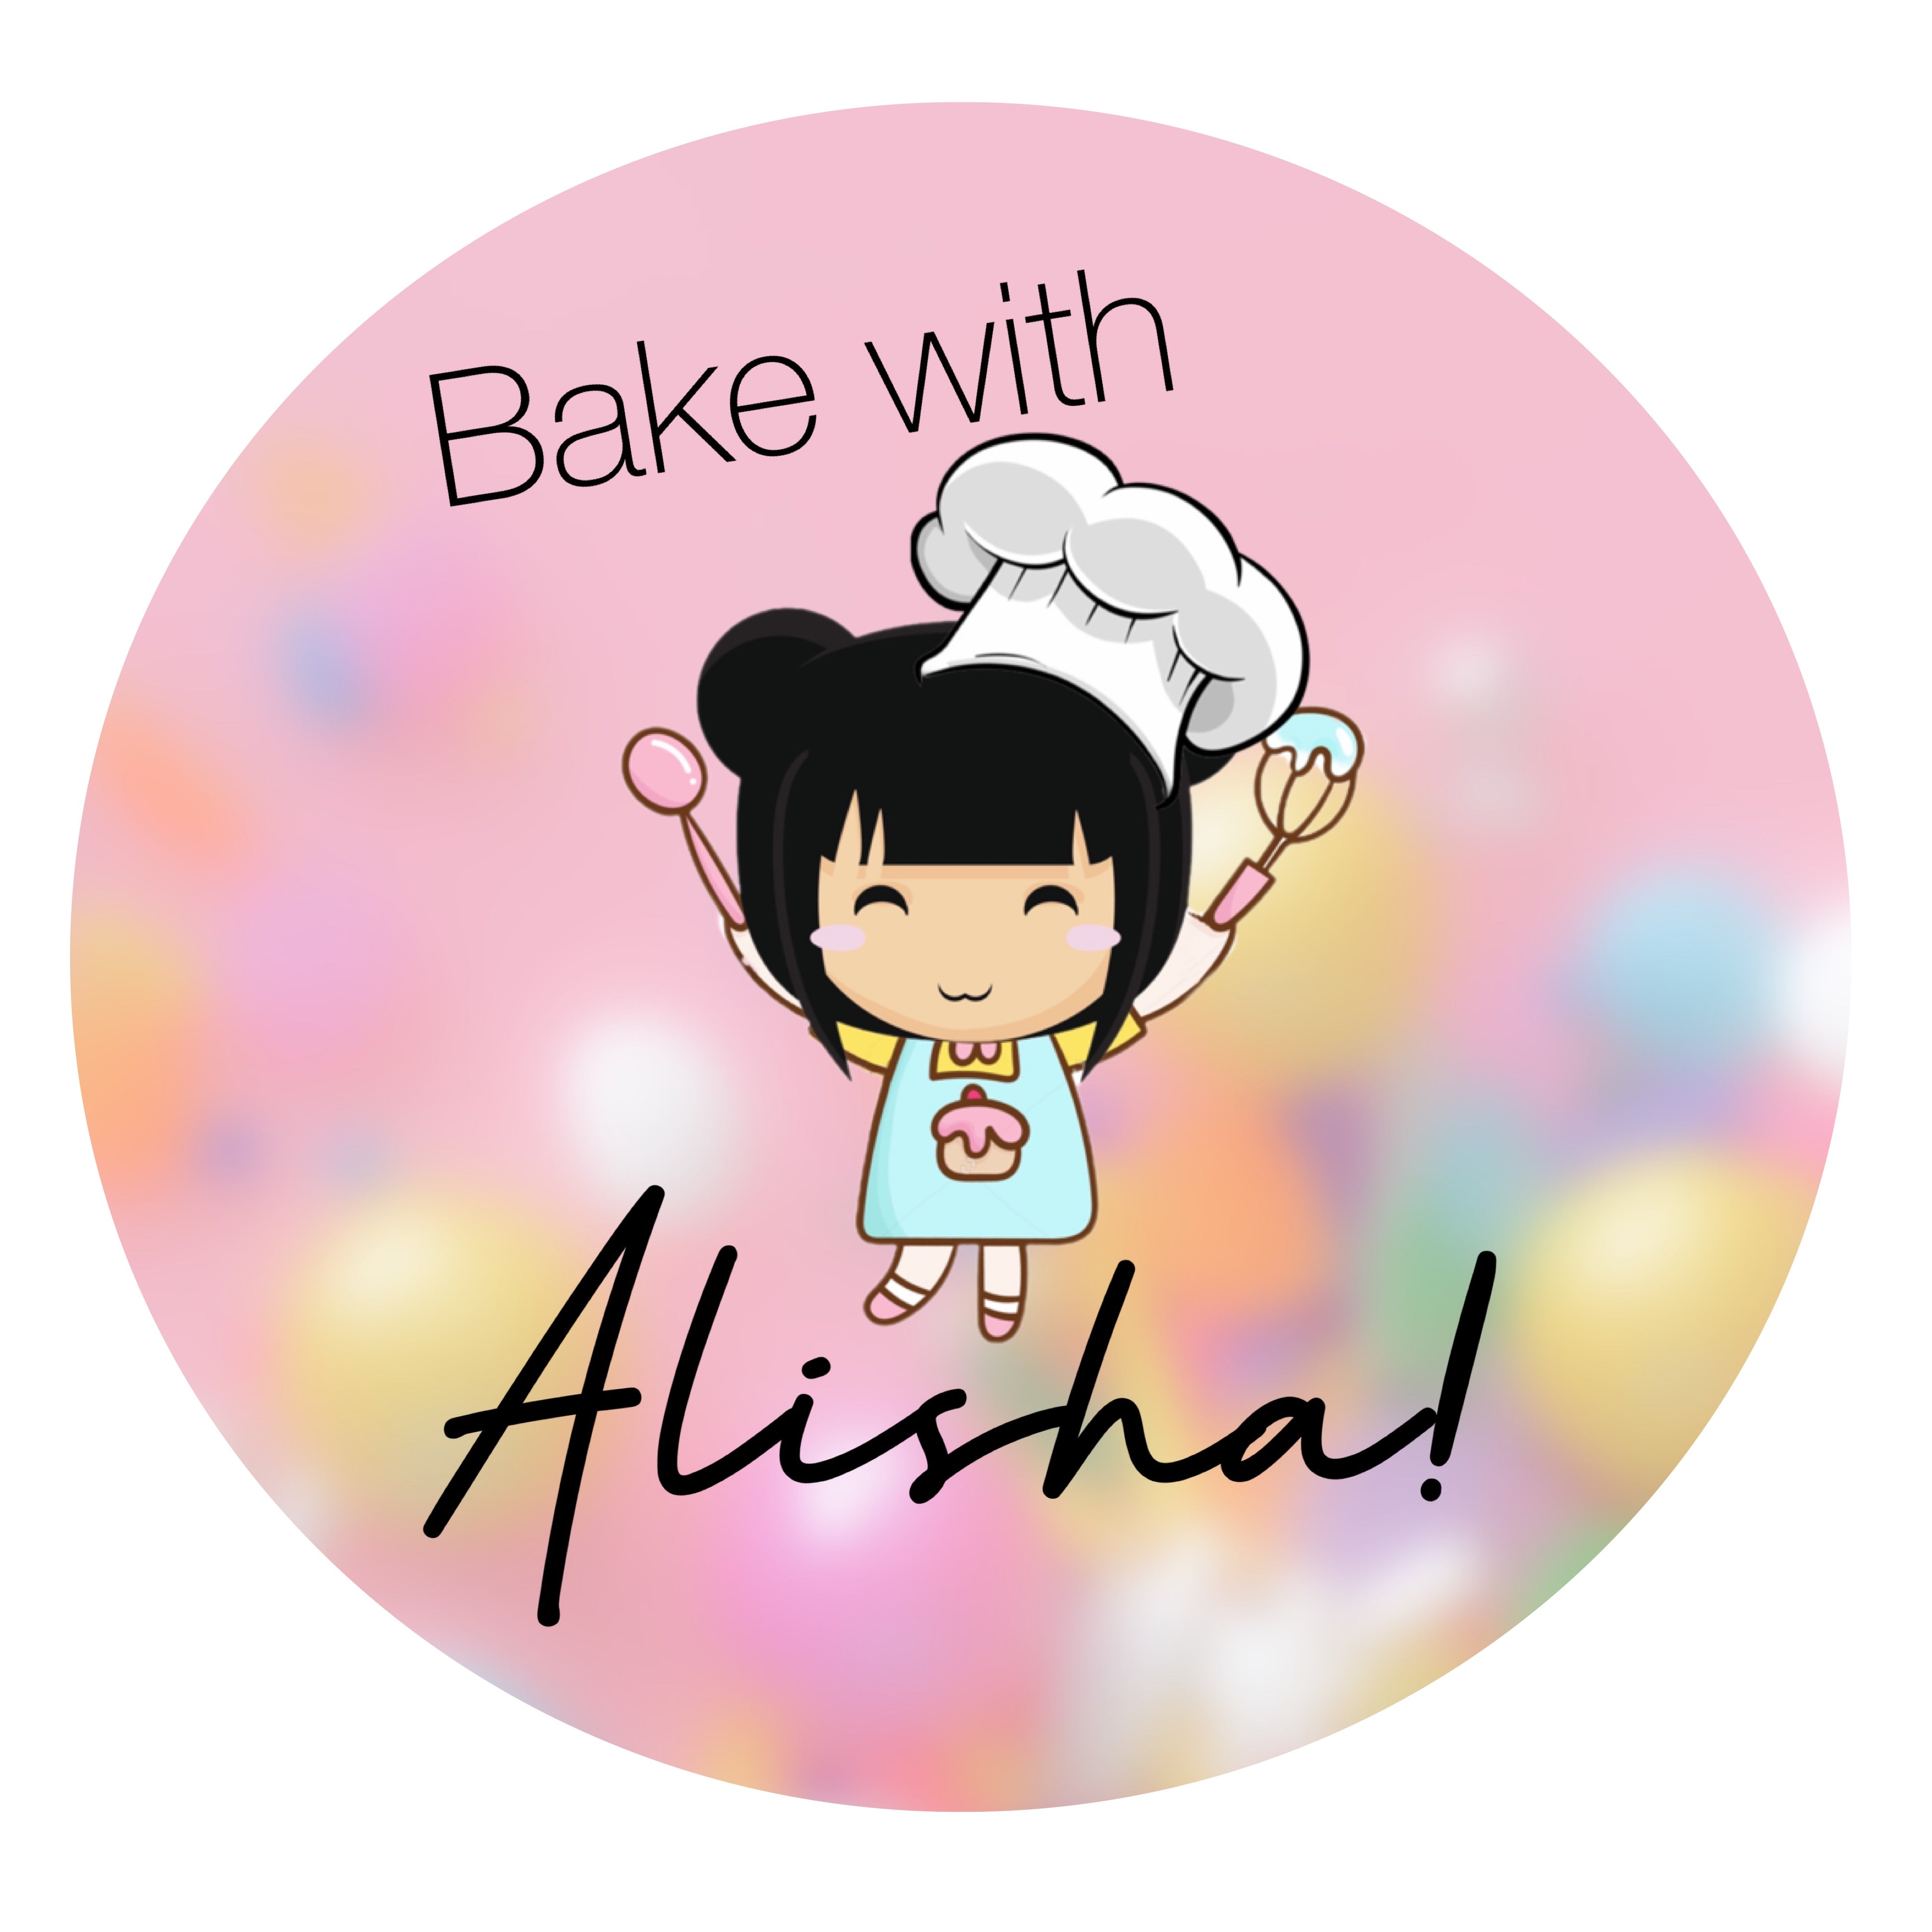 Bake with Alisha!